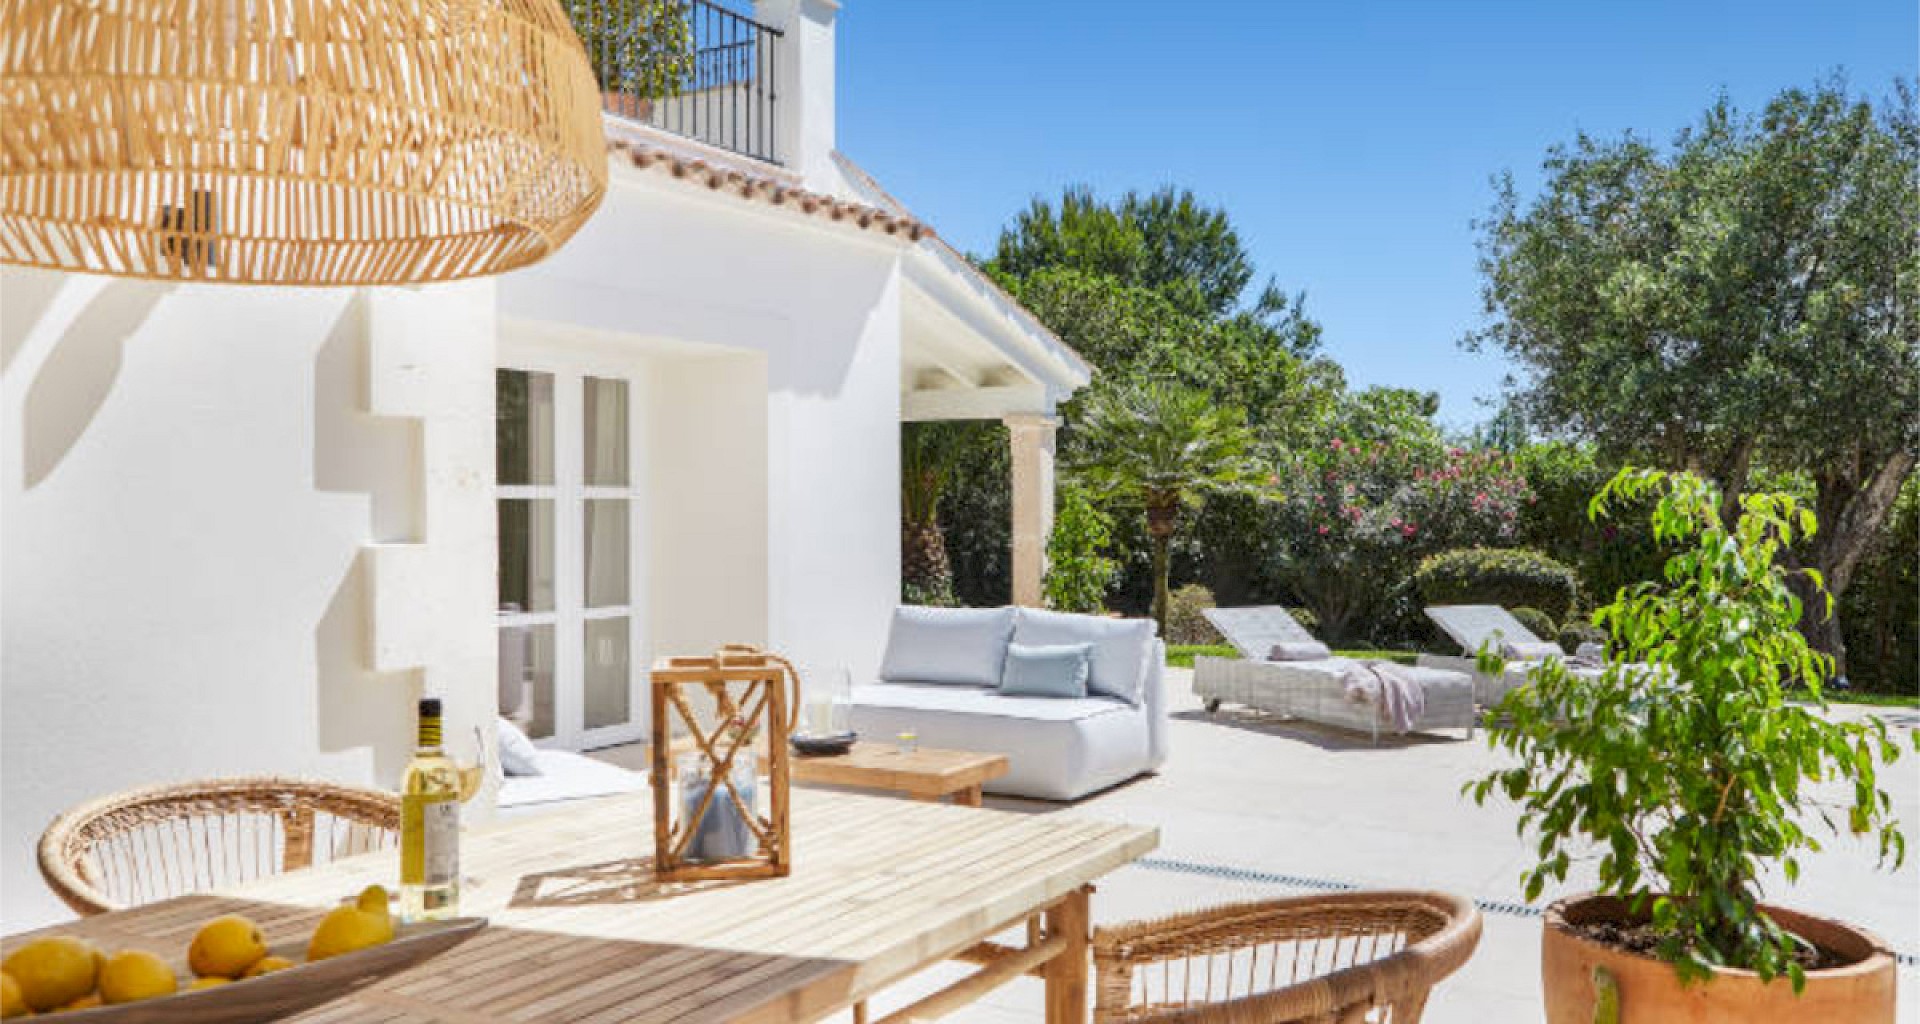 KROHN & LUEDEMANN Mediterranean Family Villa completely renovated in best location in Santa Ponsa for sale herrlicher Außenbereich